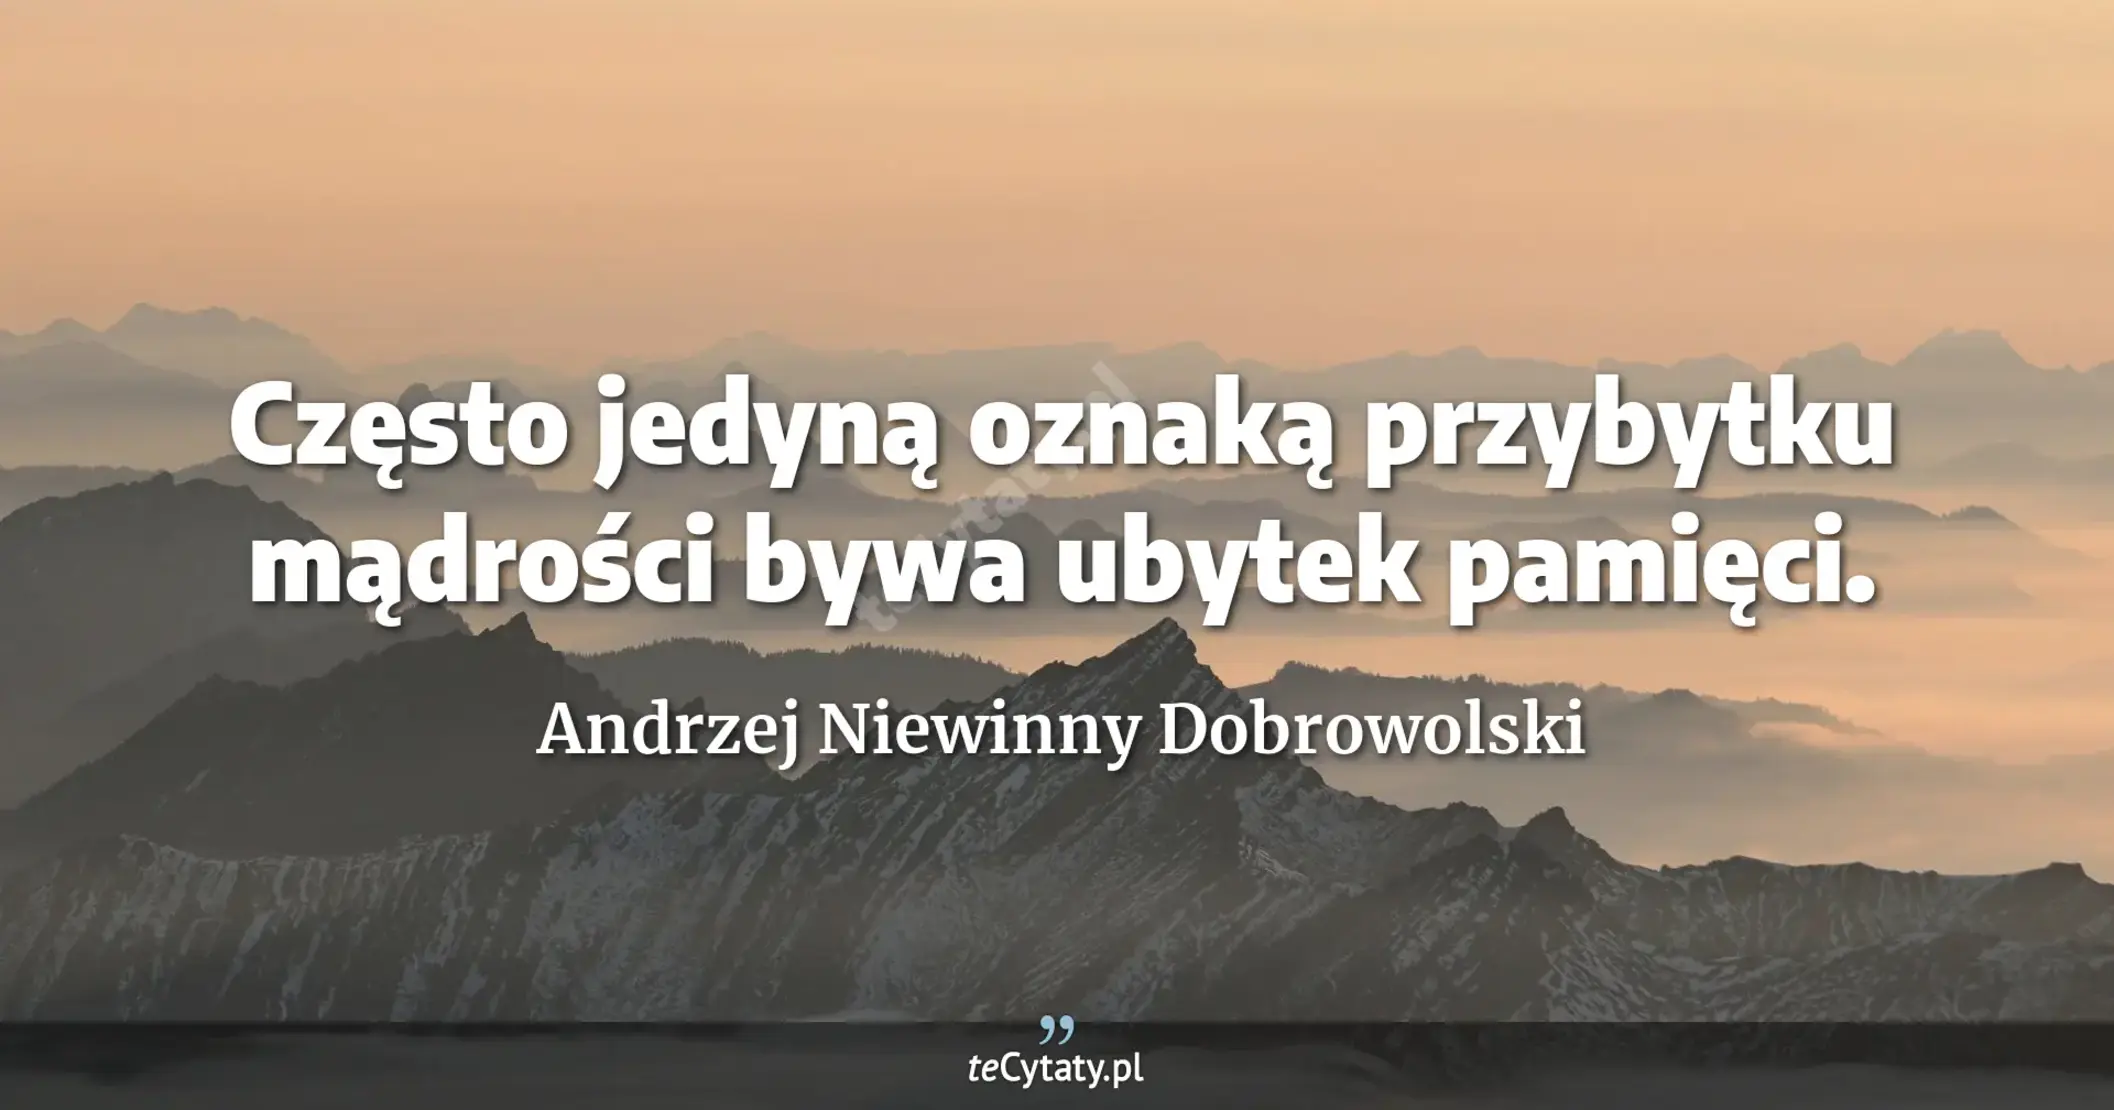 Często jedyną oznaką przybytku mądrości bywa ubytek pamięci. - Andrzej Niewinny Dobrowolski